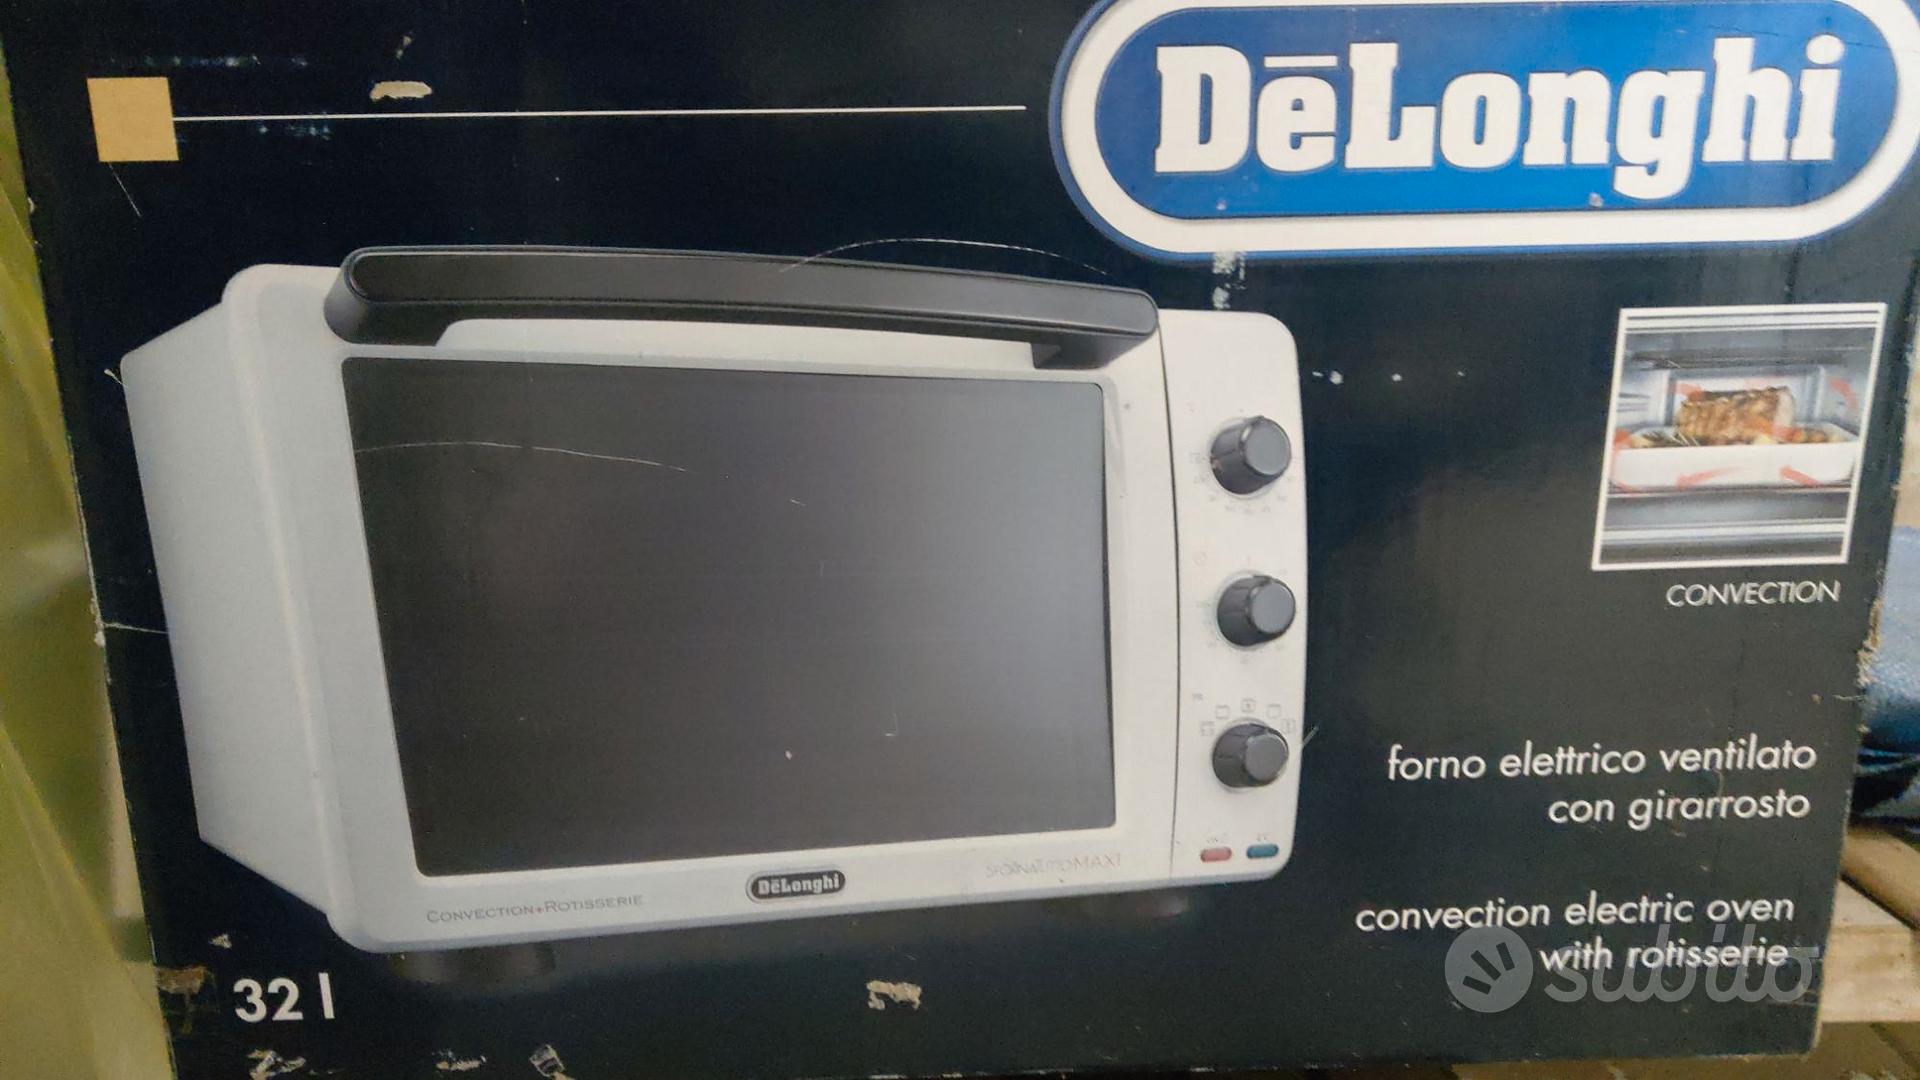 Sfornatutto Delonghi Maxi 32 litri - Elettrodomestici In vendita a Biella